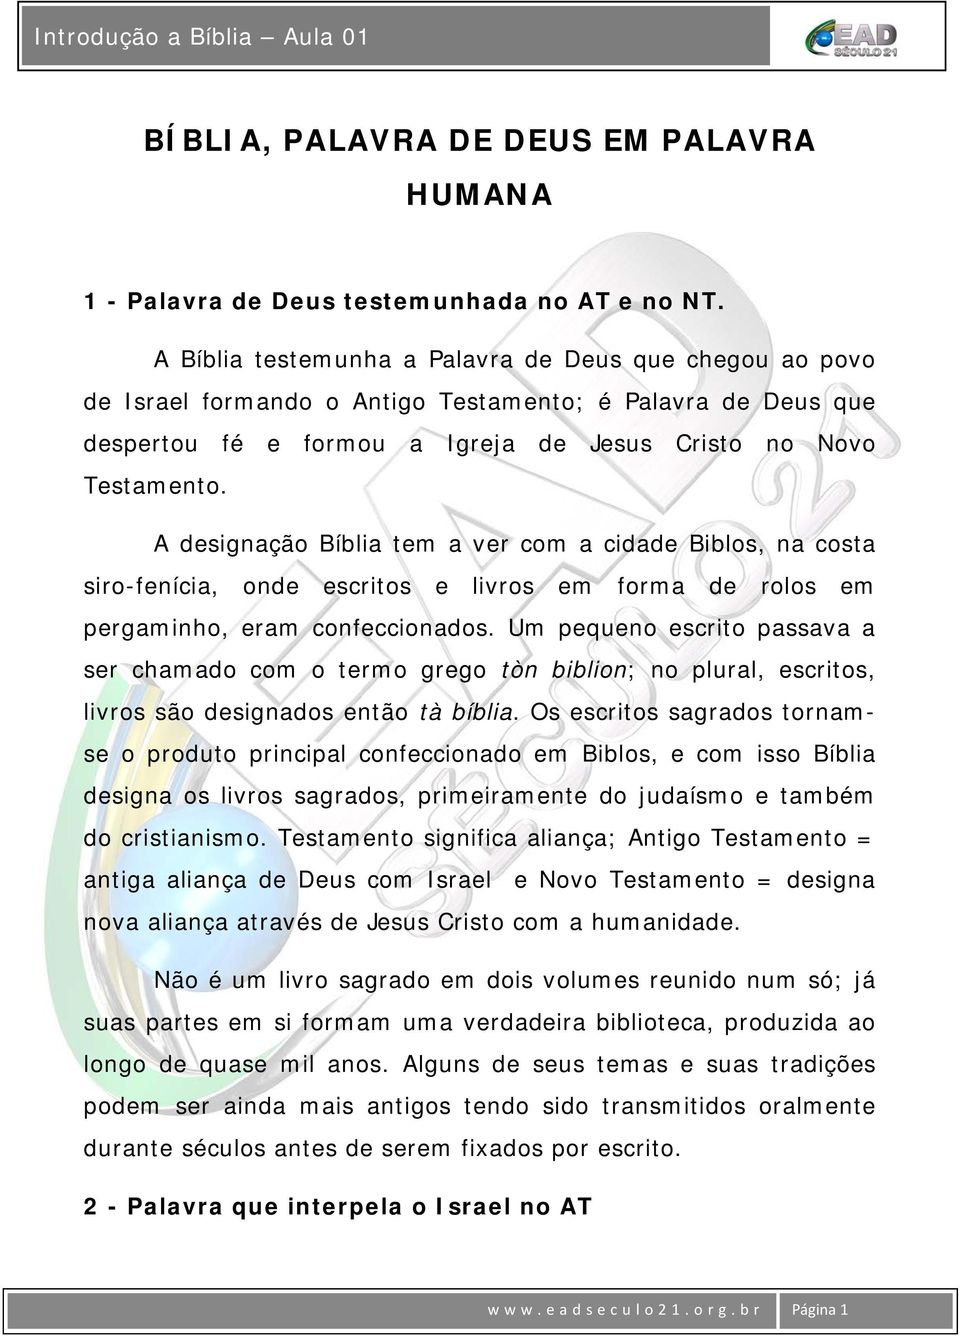 A designação Bíblia tem a ver com a cidade Biblos, na costa siro-fenícia, onde escritos e livros em forma de rolos em pergaminho, eram confeccionados.